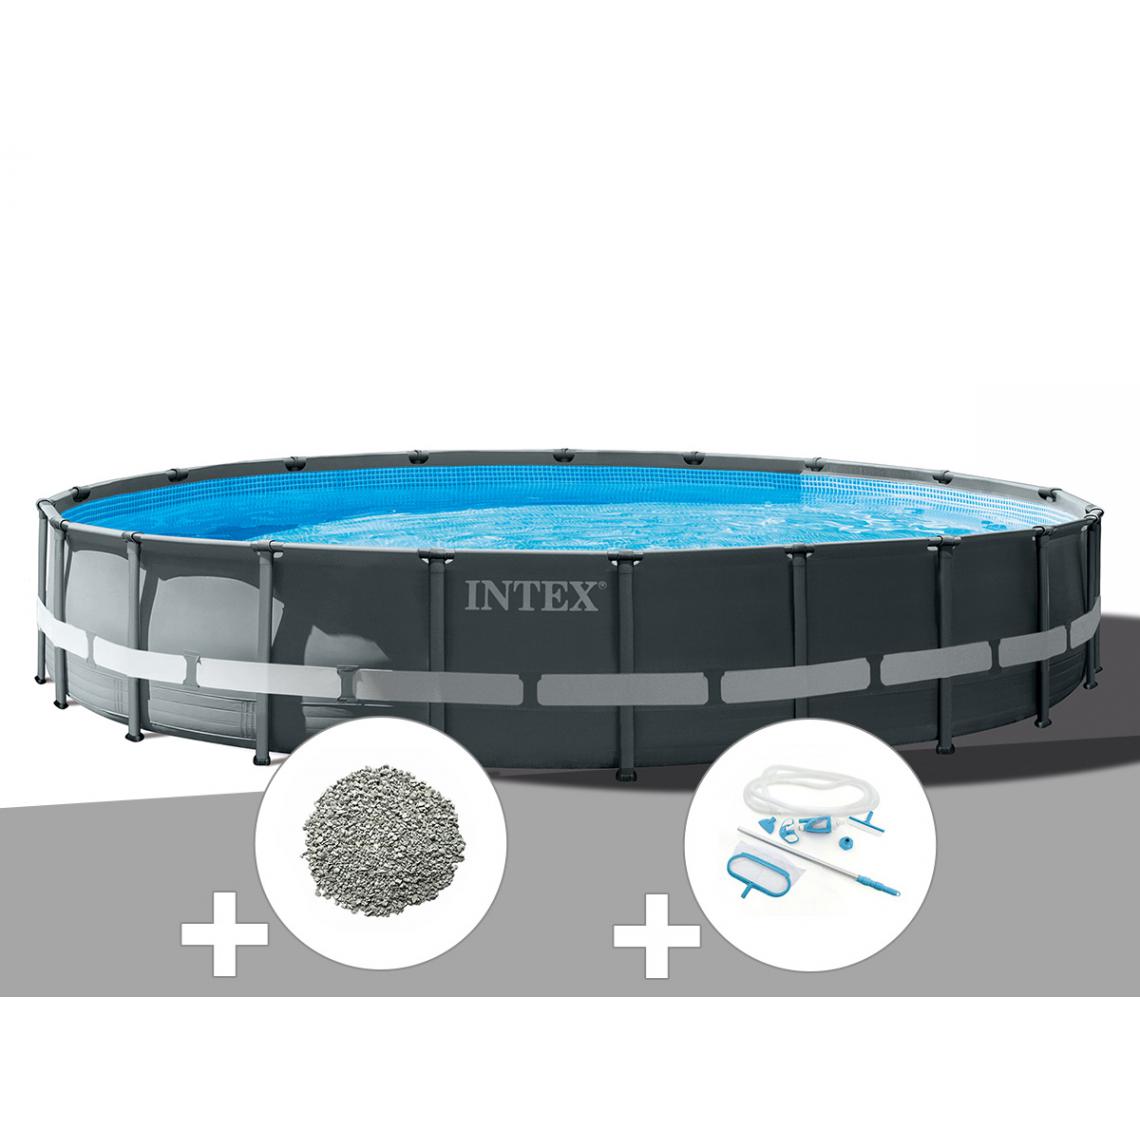 Intex - Kit piscine tubulaire Intex Ultra XTR Frame ronde 6,10 x 1,22 m + 20 kg de zéolite + Kit d'entretien - Piscine Tubulaire